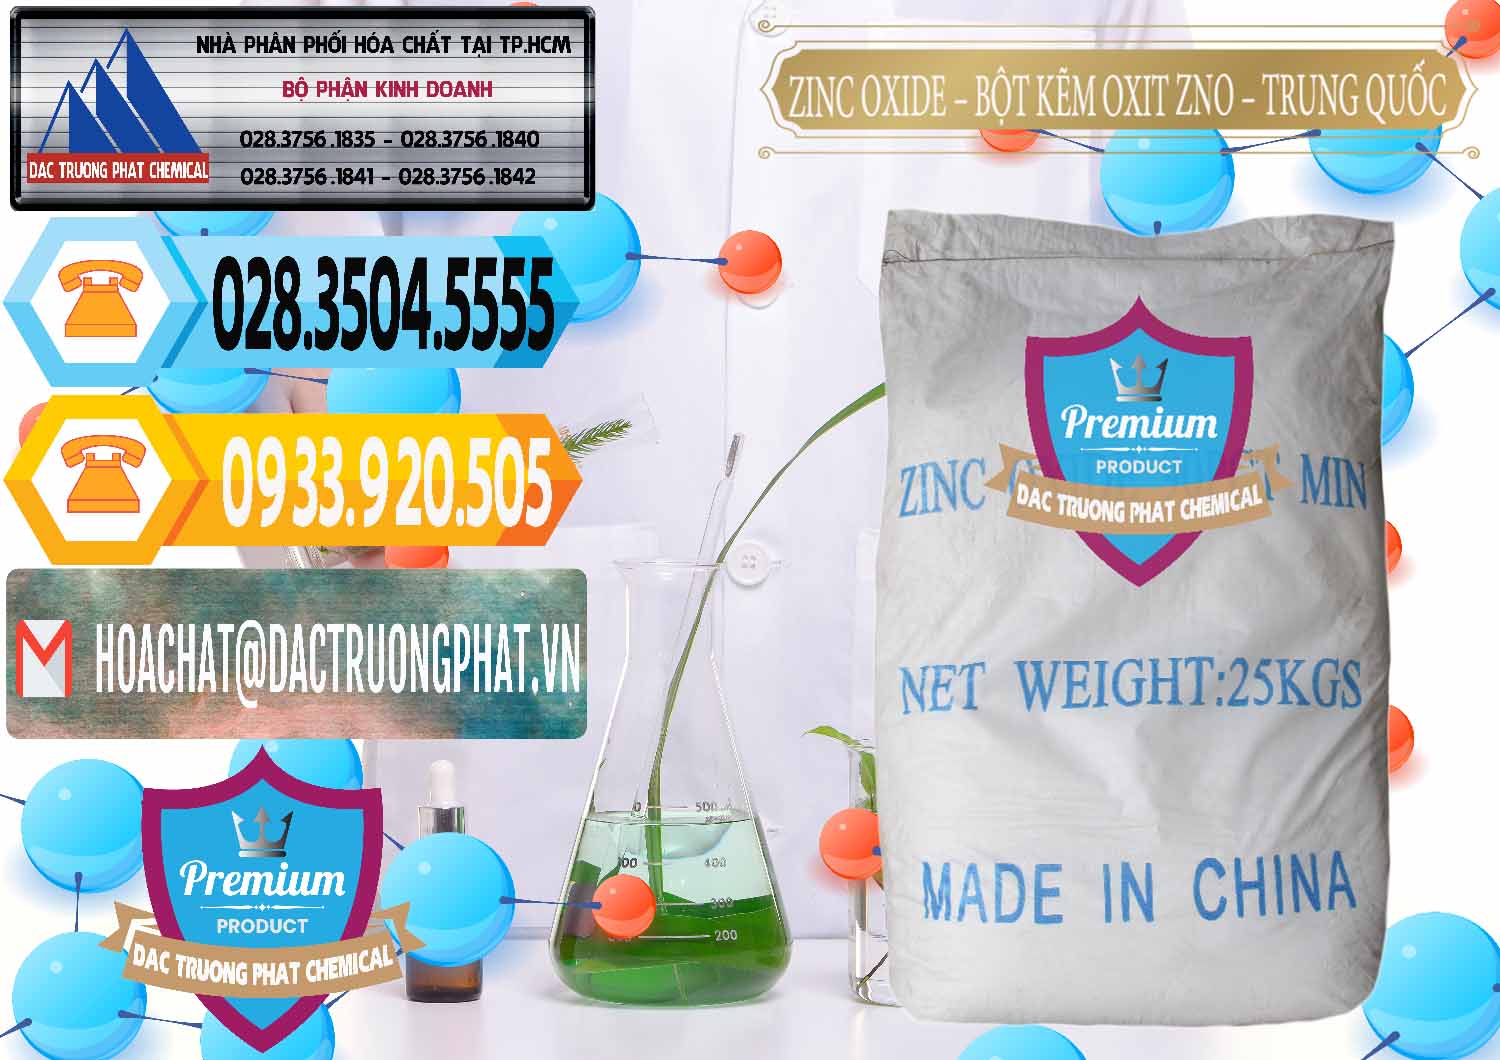 Nơi chuyên bán - cung ứng Zinc Oxide - Bột Kẽm Oxit ZNO Trung Quốc China - 0182 - Kinh doanh - phân phối hóa chất tại TP.HCM - hoachattayrua.net